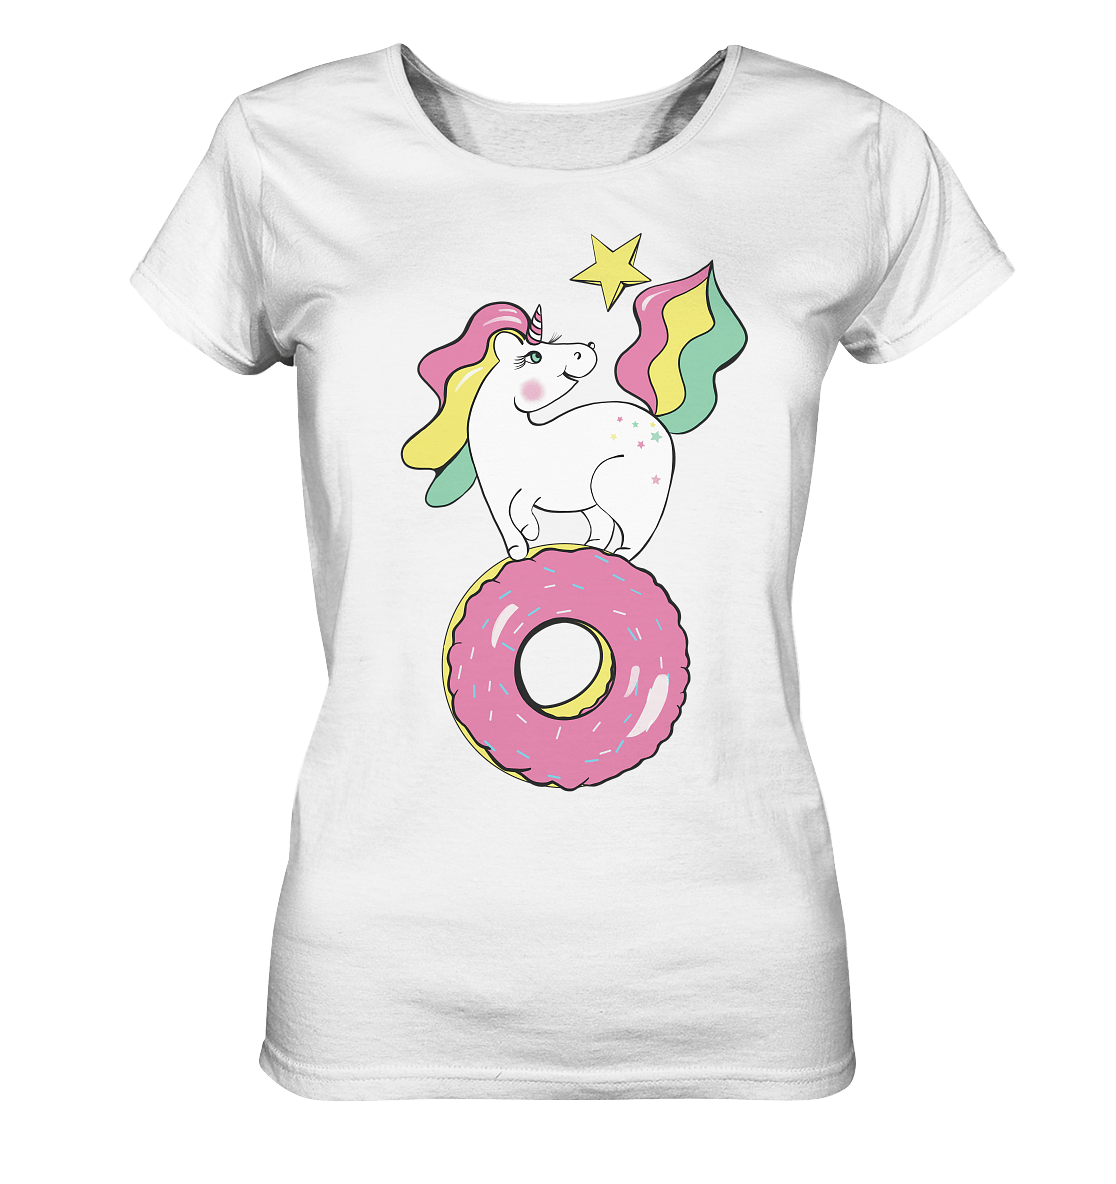 einhorn t shirt Unicorn auf dem Donut T-Shirt in weiß Bloominic